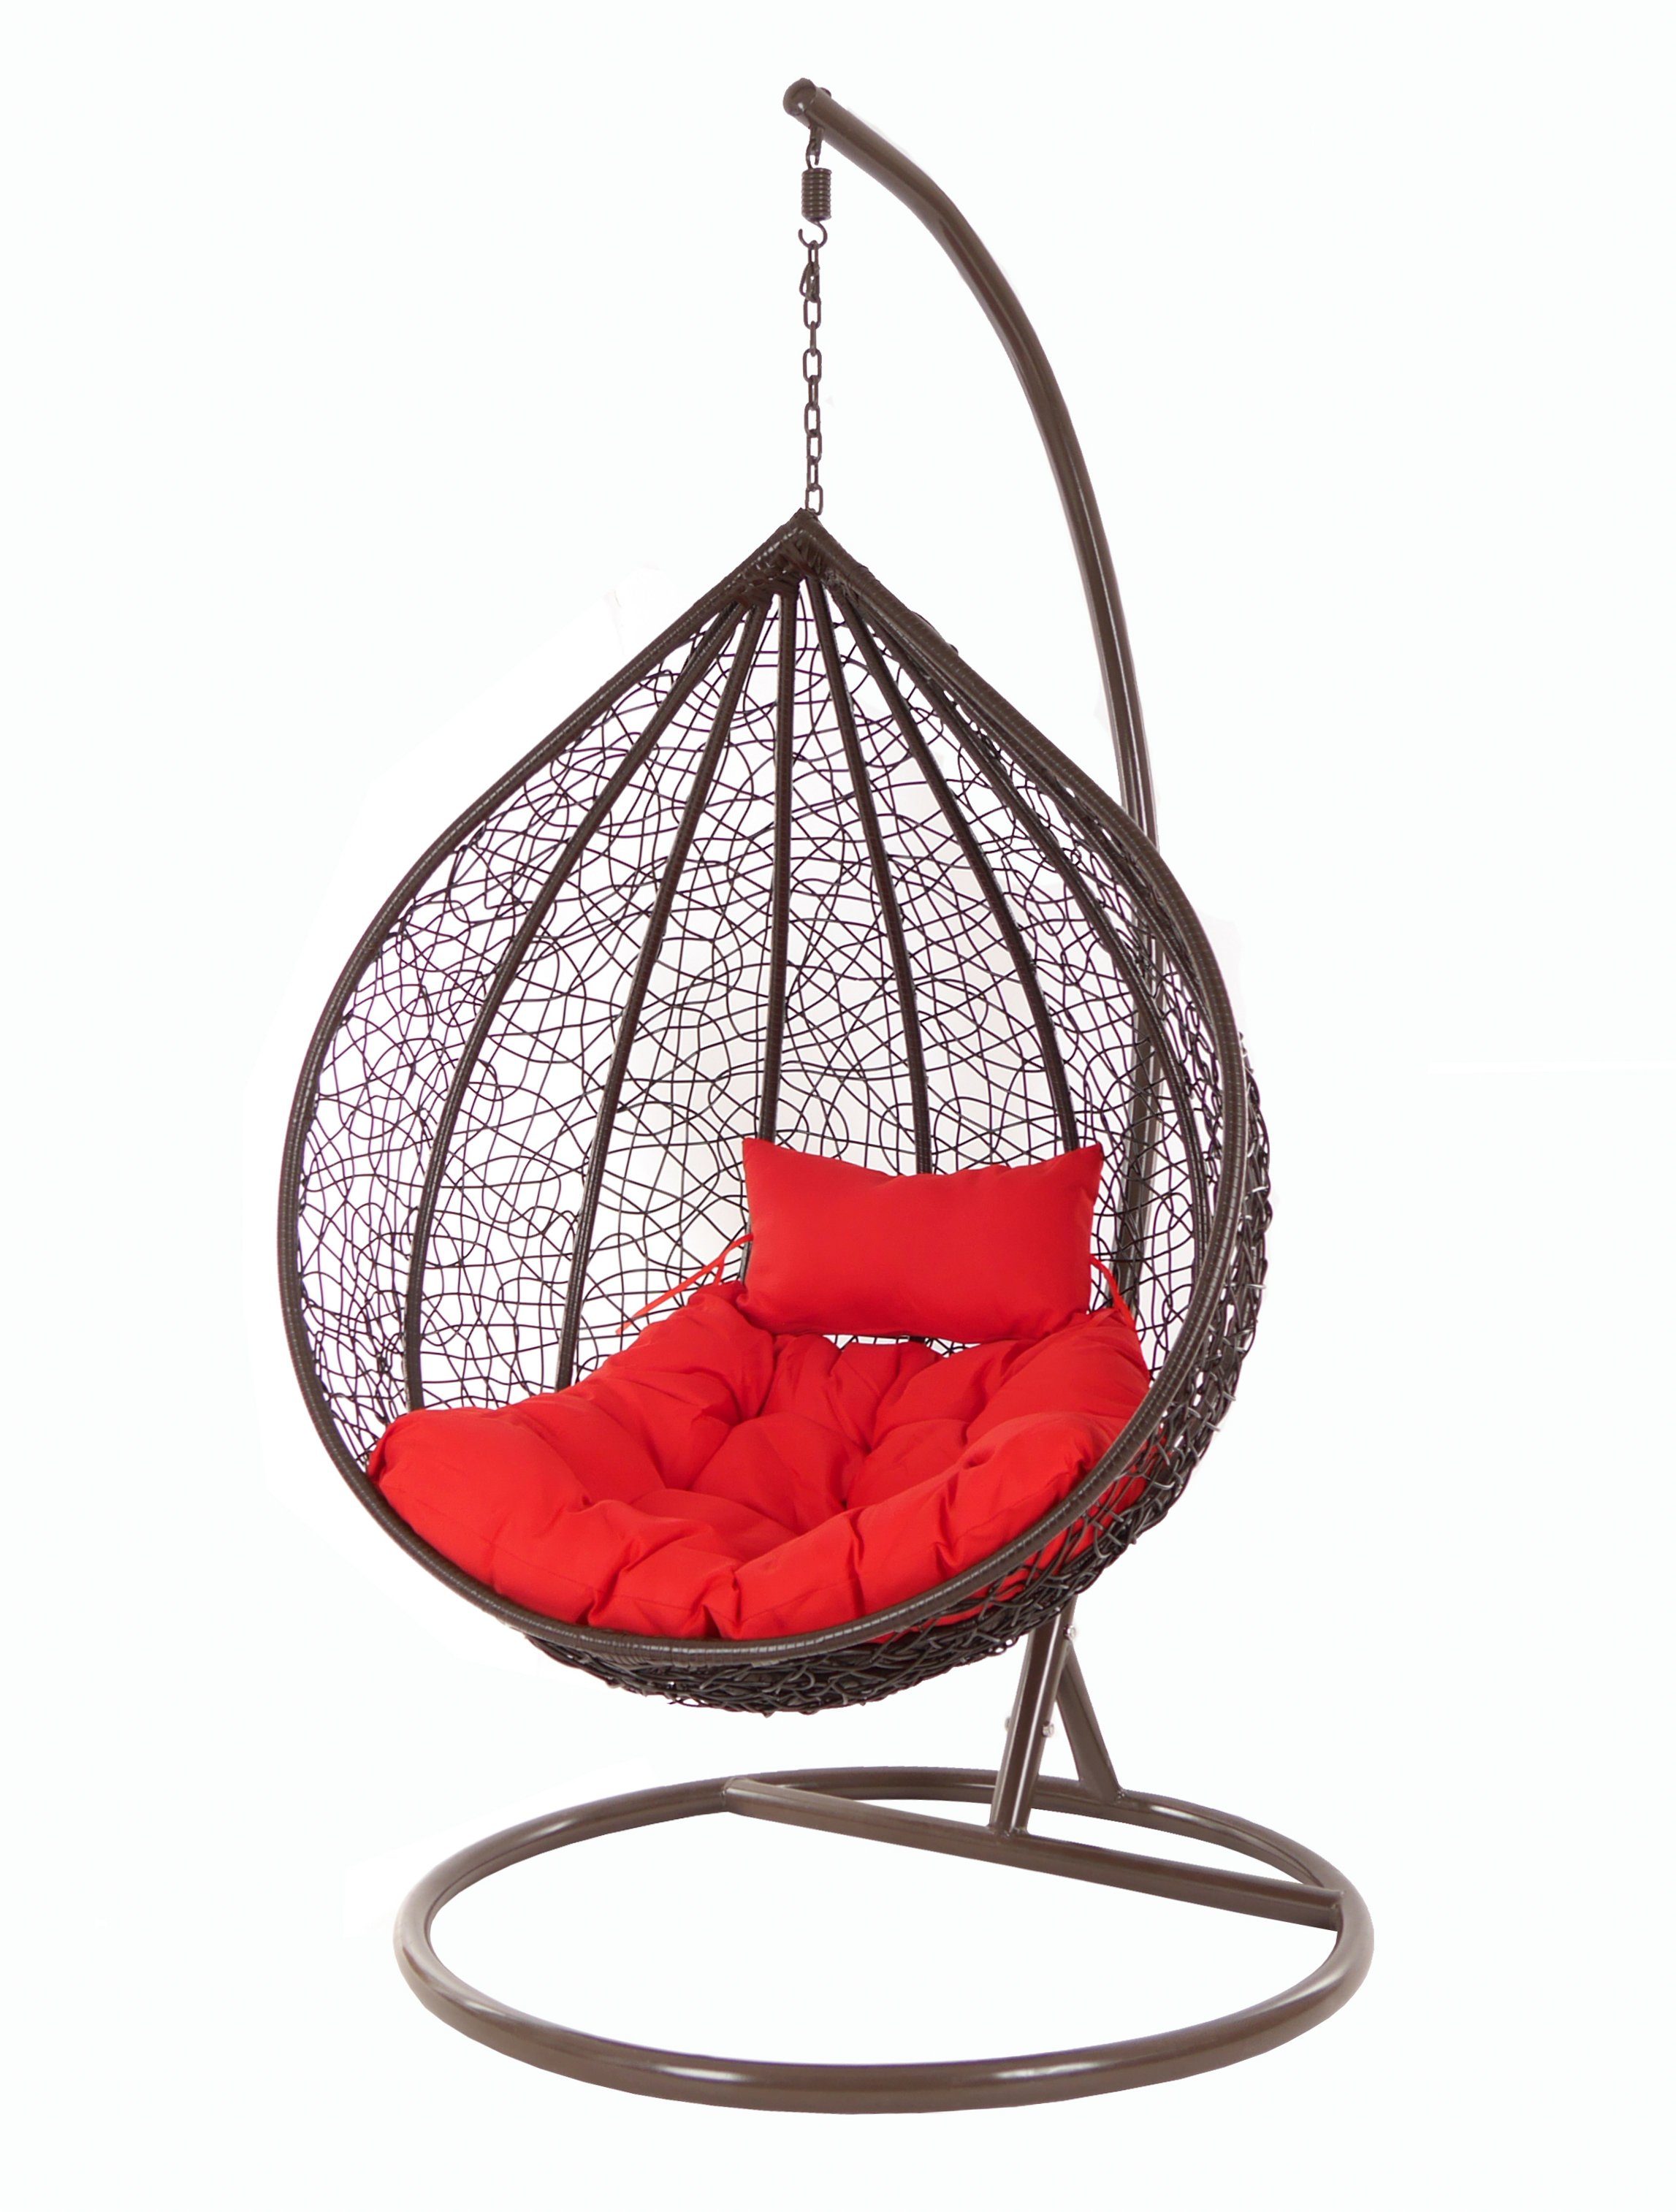 Swing Loungemöbel KIDEO rot MANACOR Kissen, Gestell darkbrown, scarlet) Chair, dunkelbraun, und Hängesessel Hängesessel Hängesessel (3050 mit